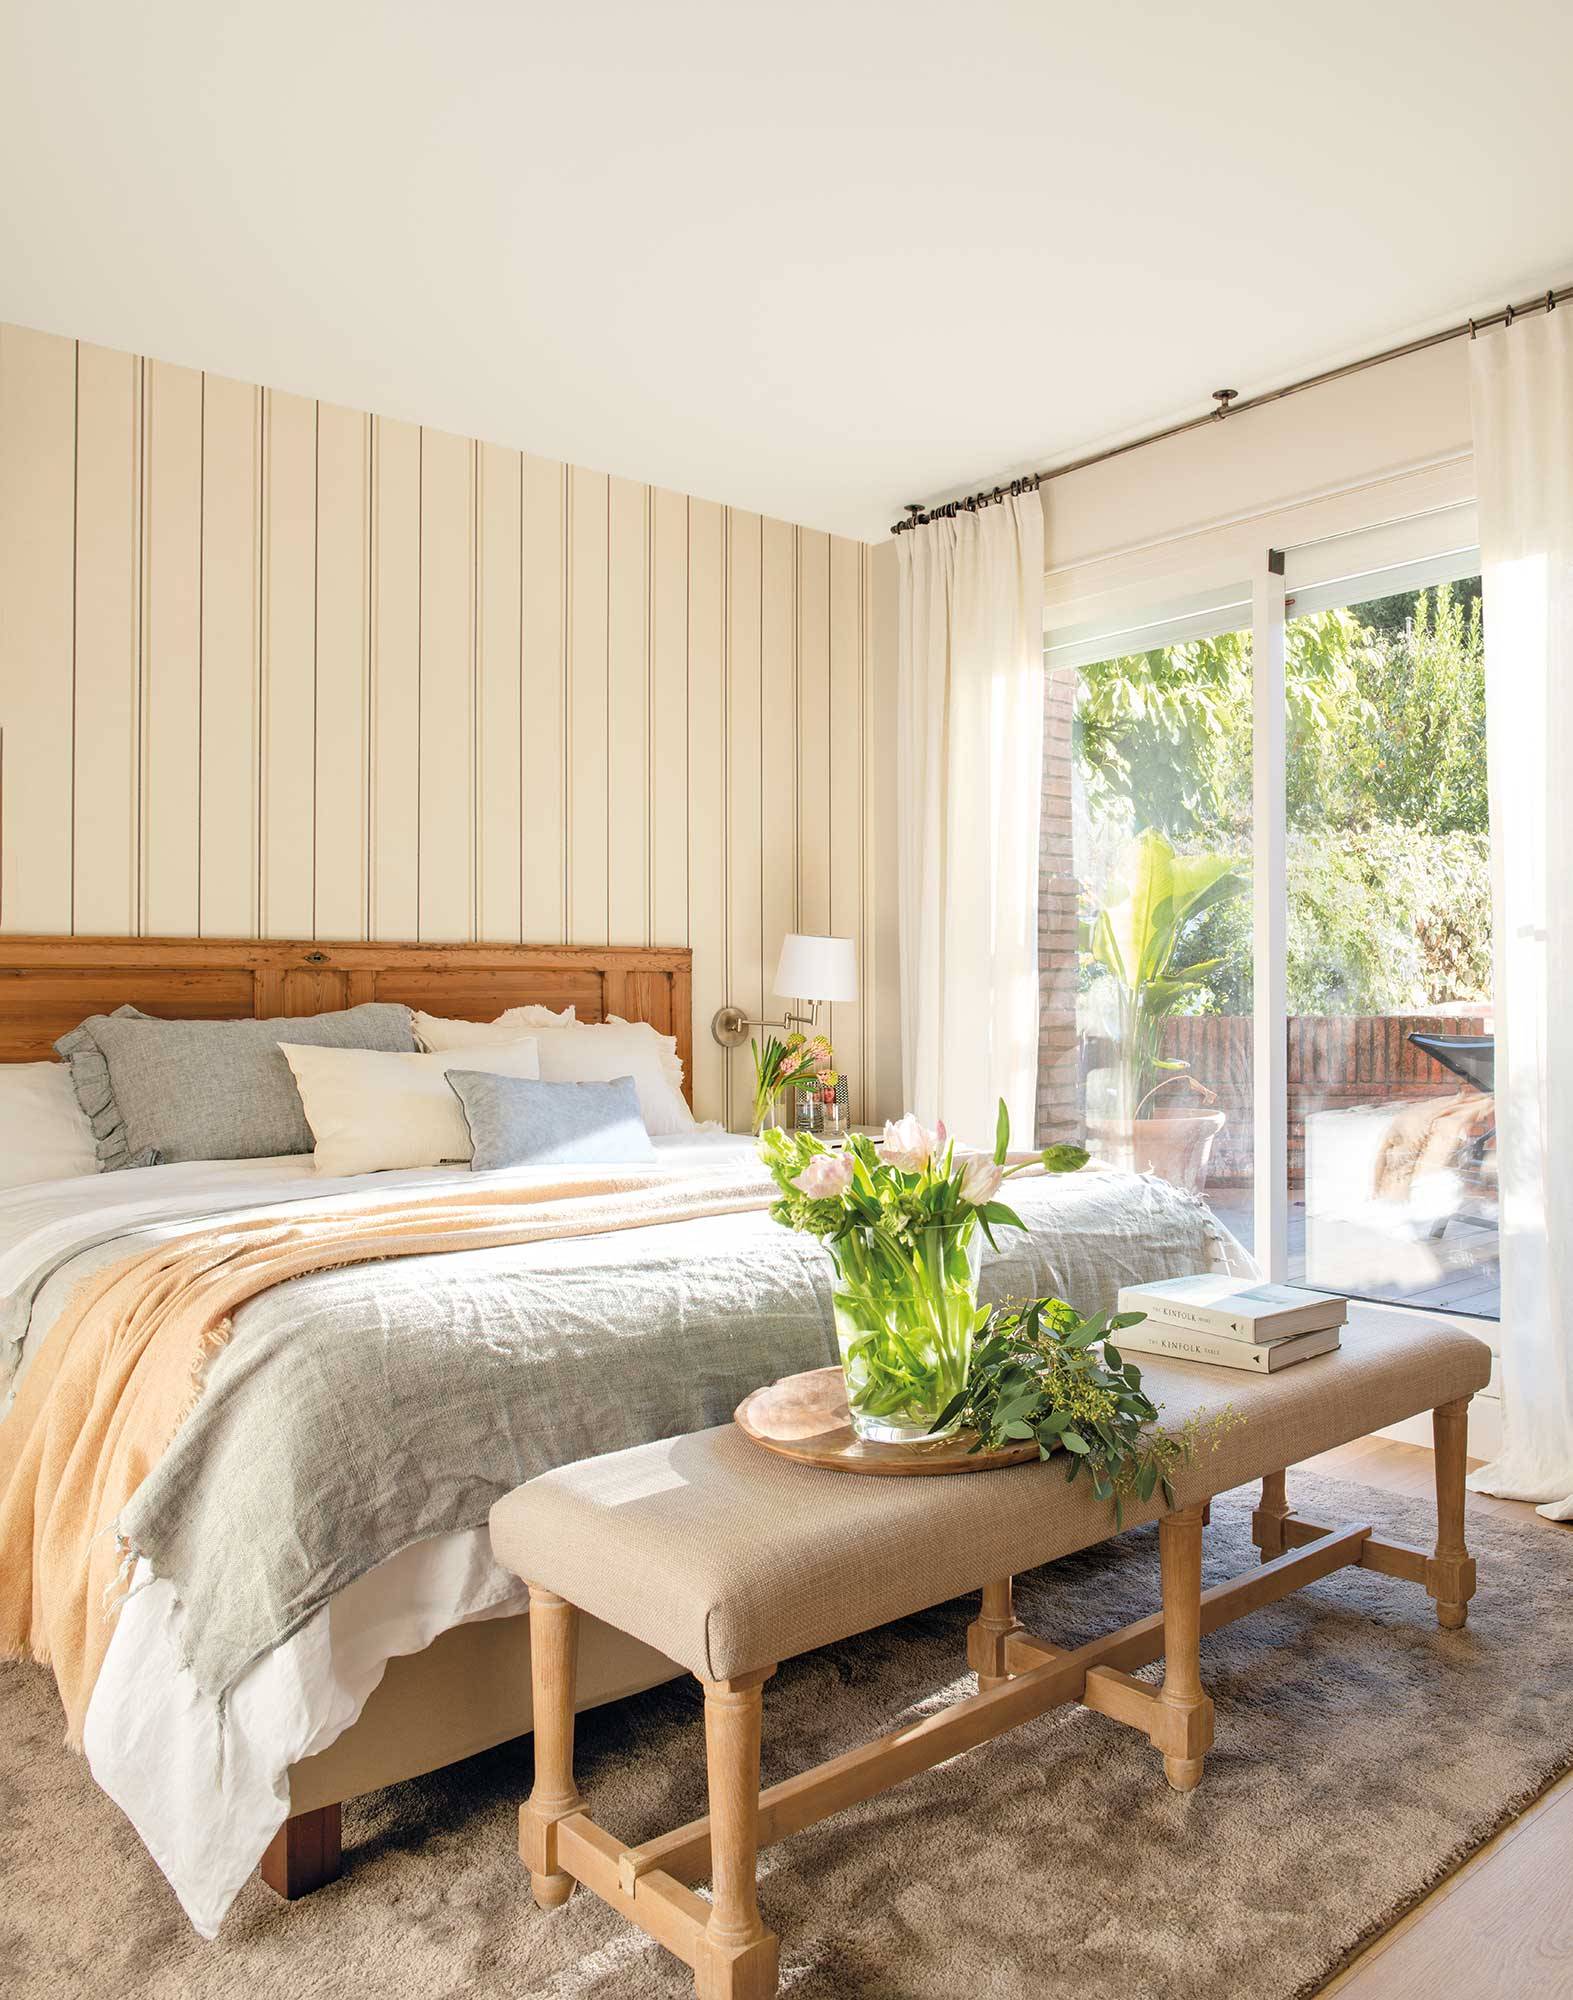 Dormitorio con papel a rayas en la pared y cabecero de madera